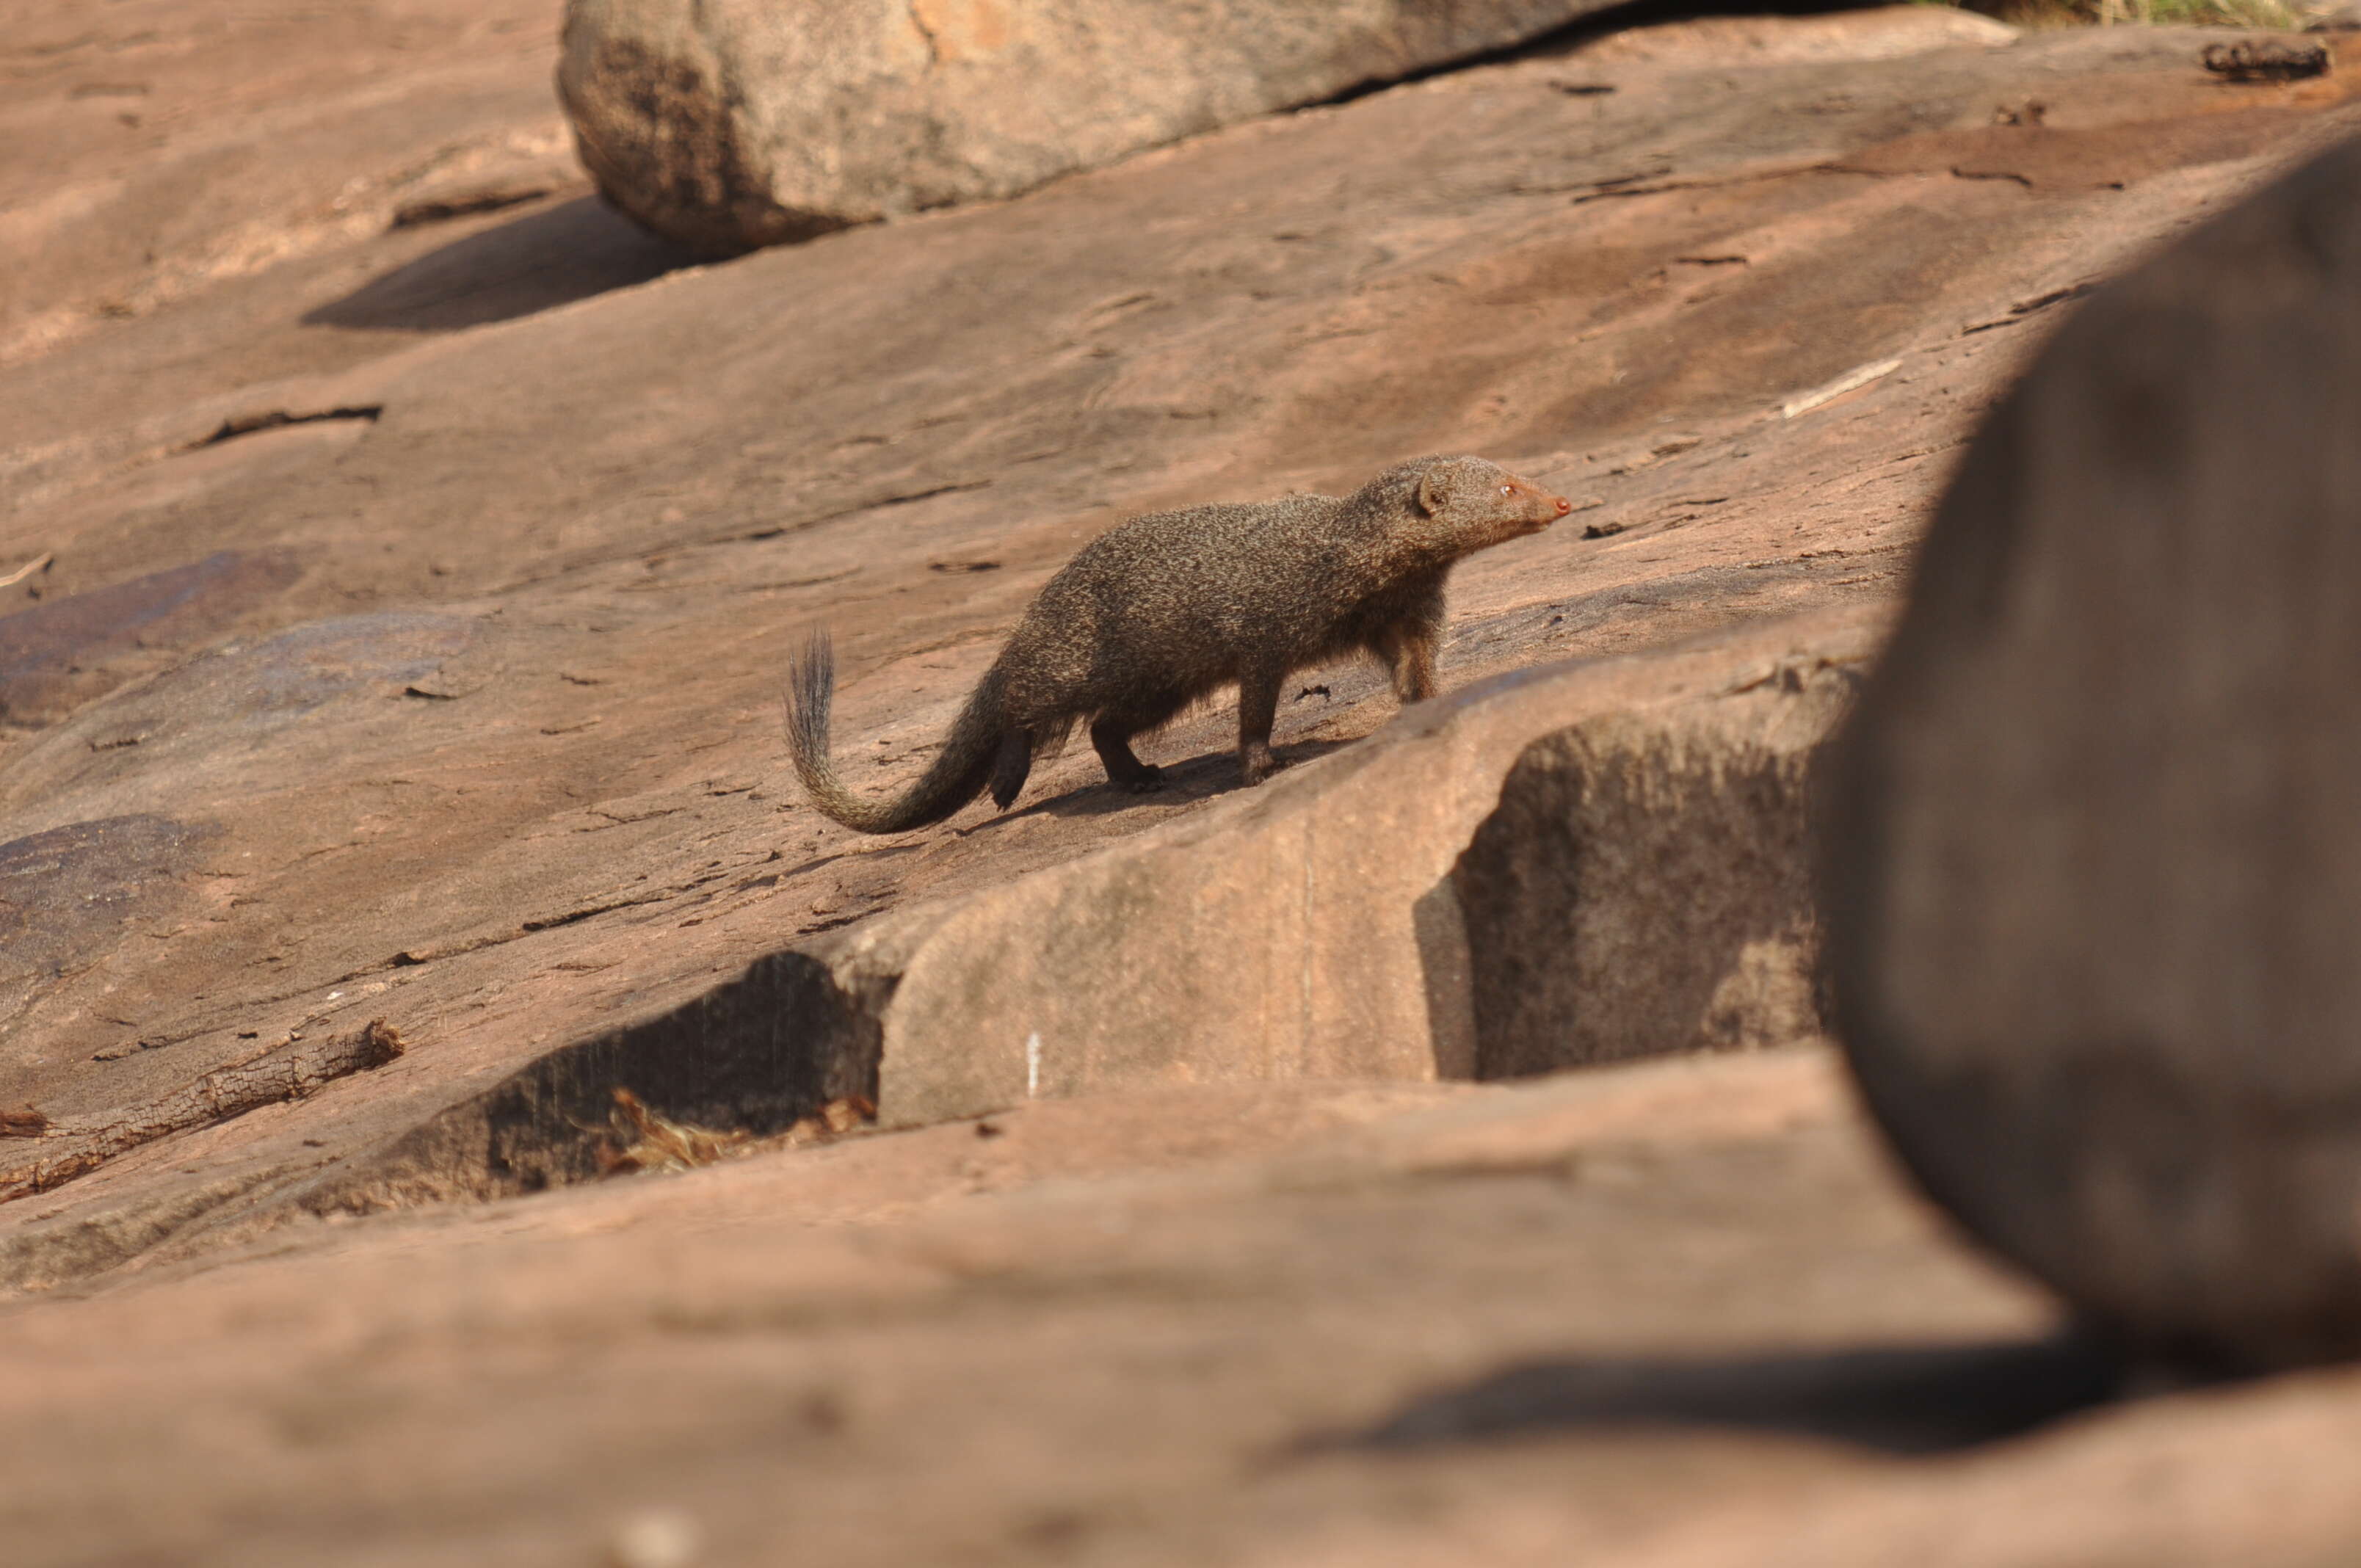 Image of Ruddy Mongoose